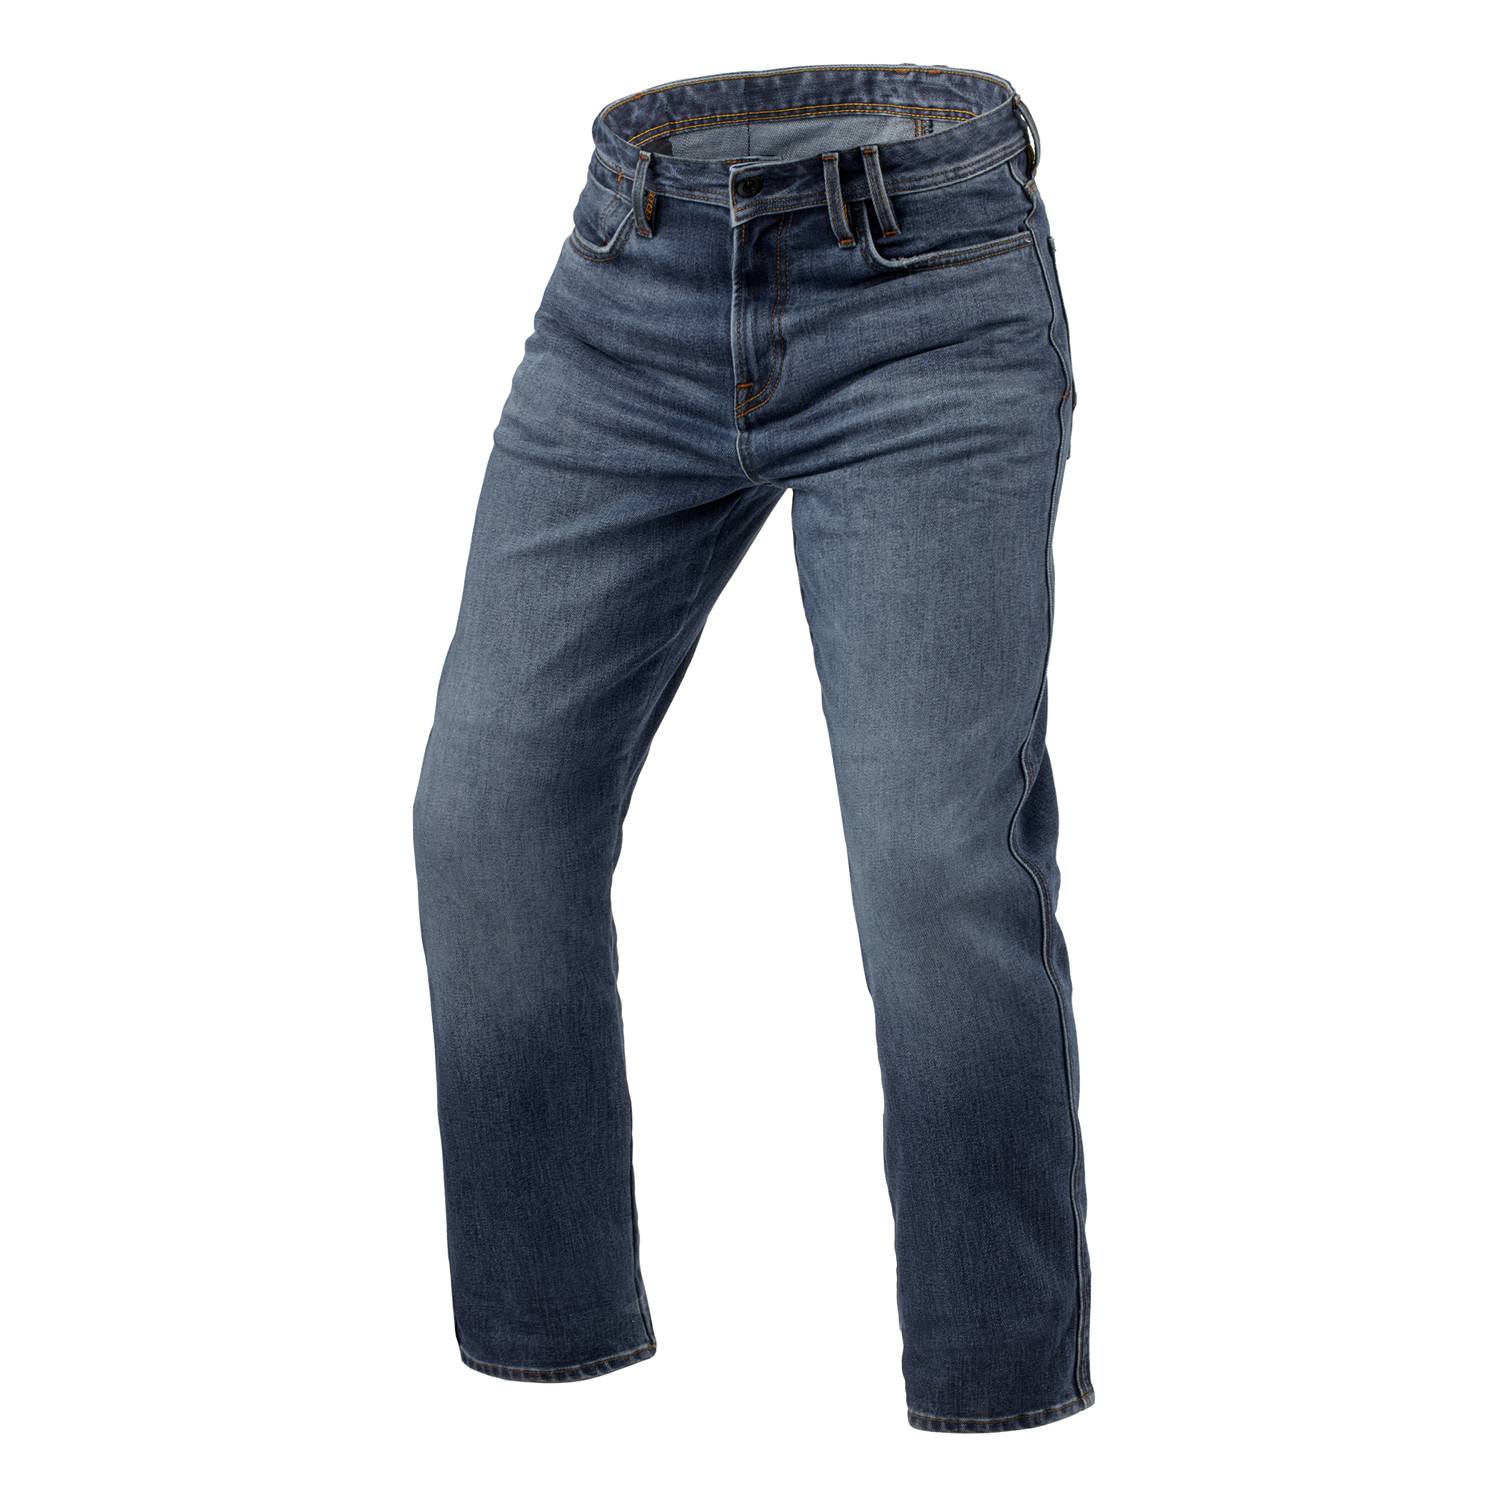 Image of REV'IT! Jeans Lombard 3 RF Medium Blue Stone L34 Motorcycle Jeans Size L34/W30 EN